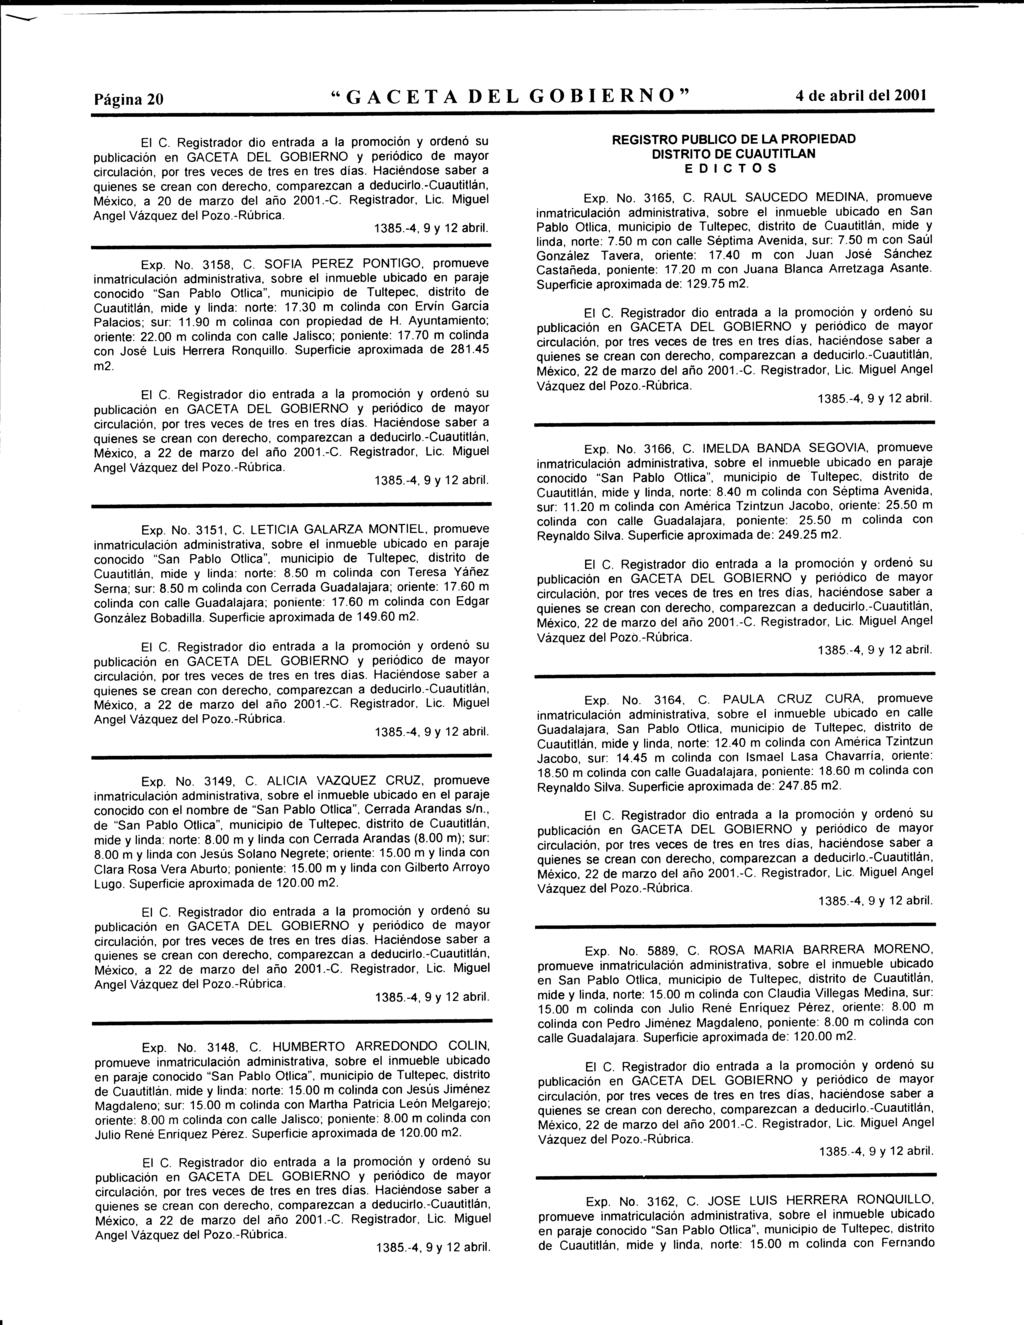 Página 20 "GACETA DEL GOBIERNO" 4 de abril del 2001 circulación, pr tres veces de tres en tres días. Haciéndse saber a quienes se crean cn derech, cmparezcan a deducirl.